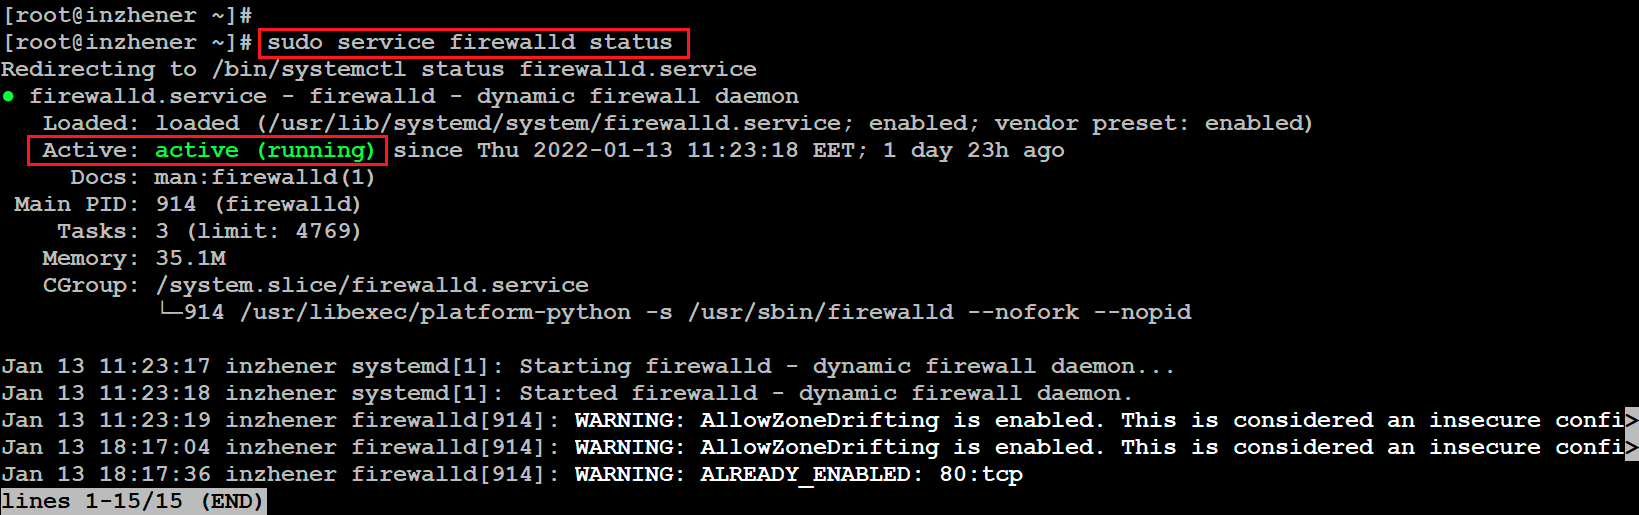 временно или полностью остановить службу Firewall на сервере